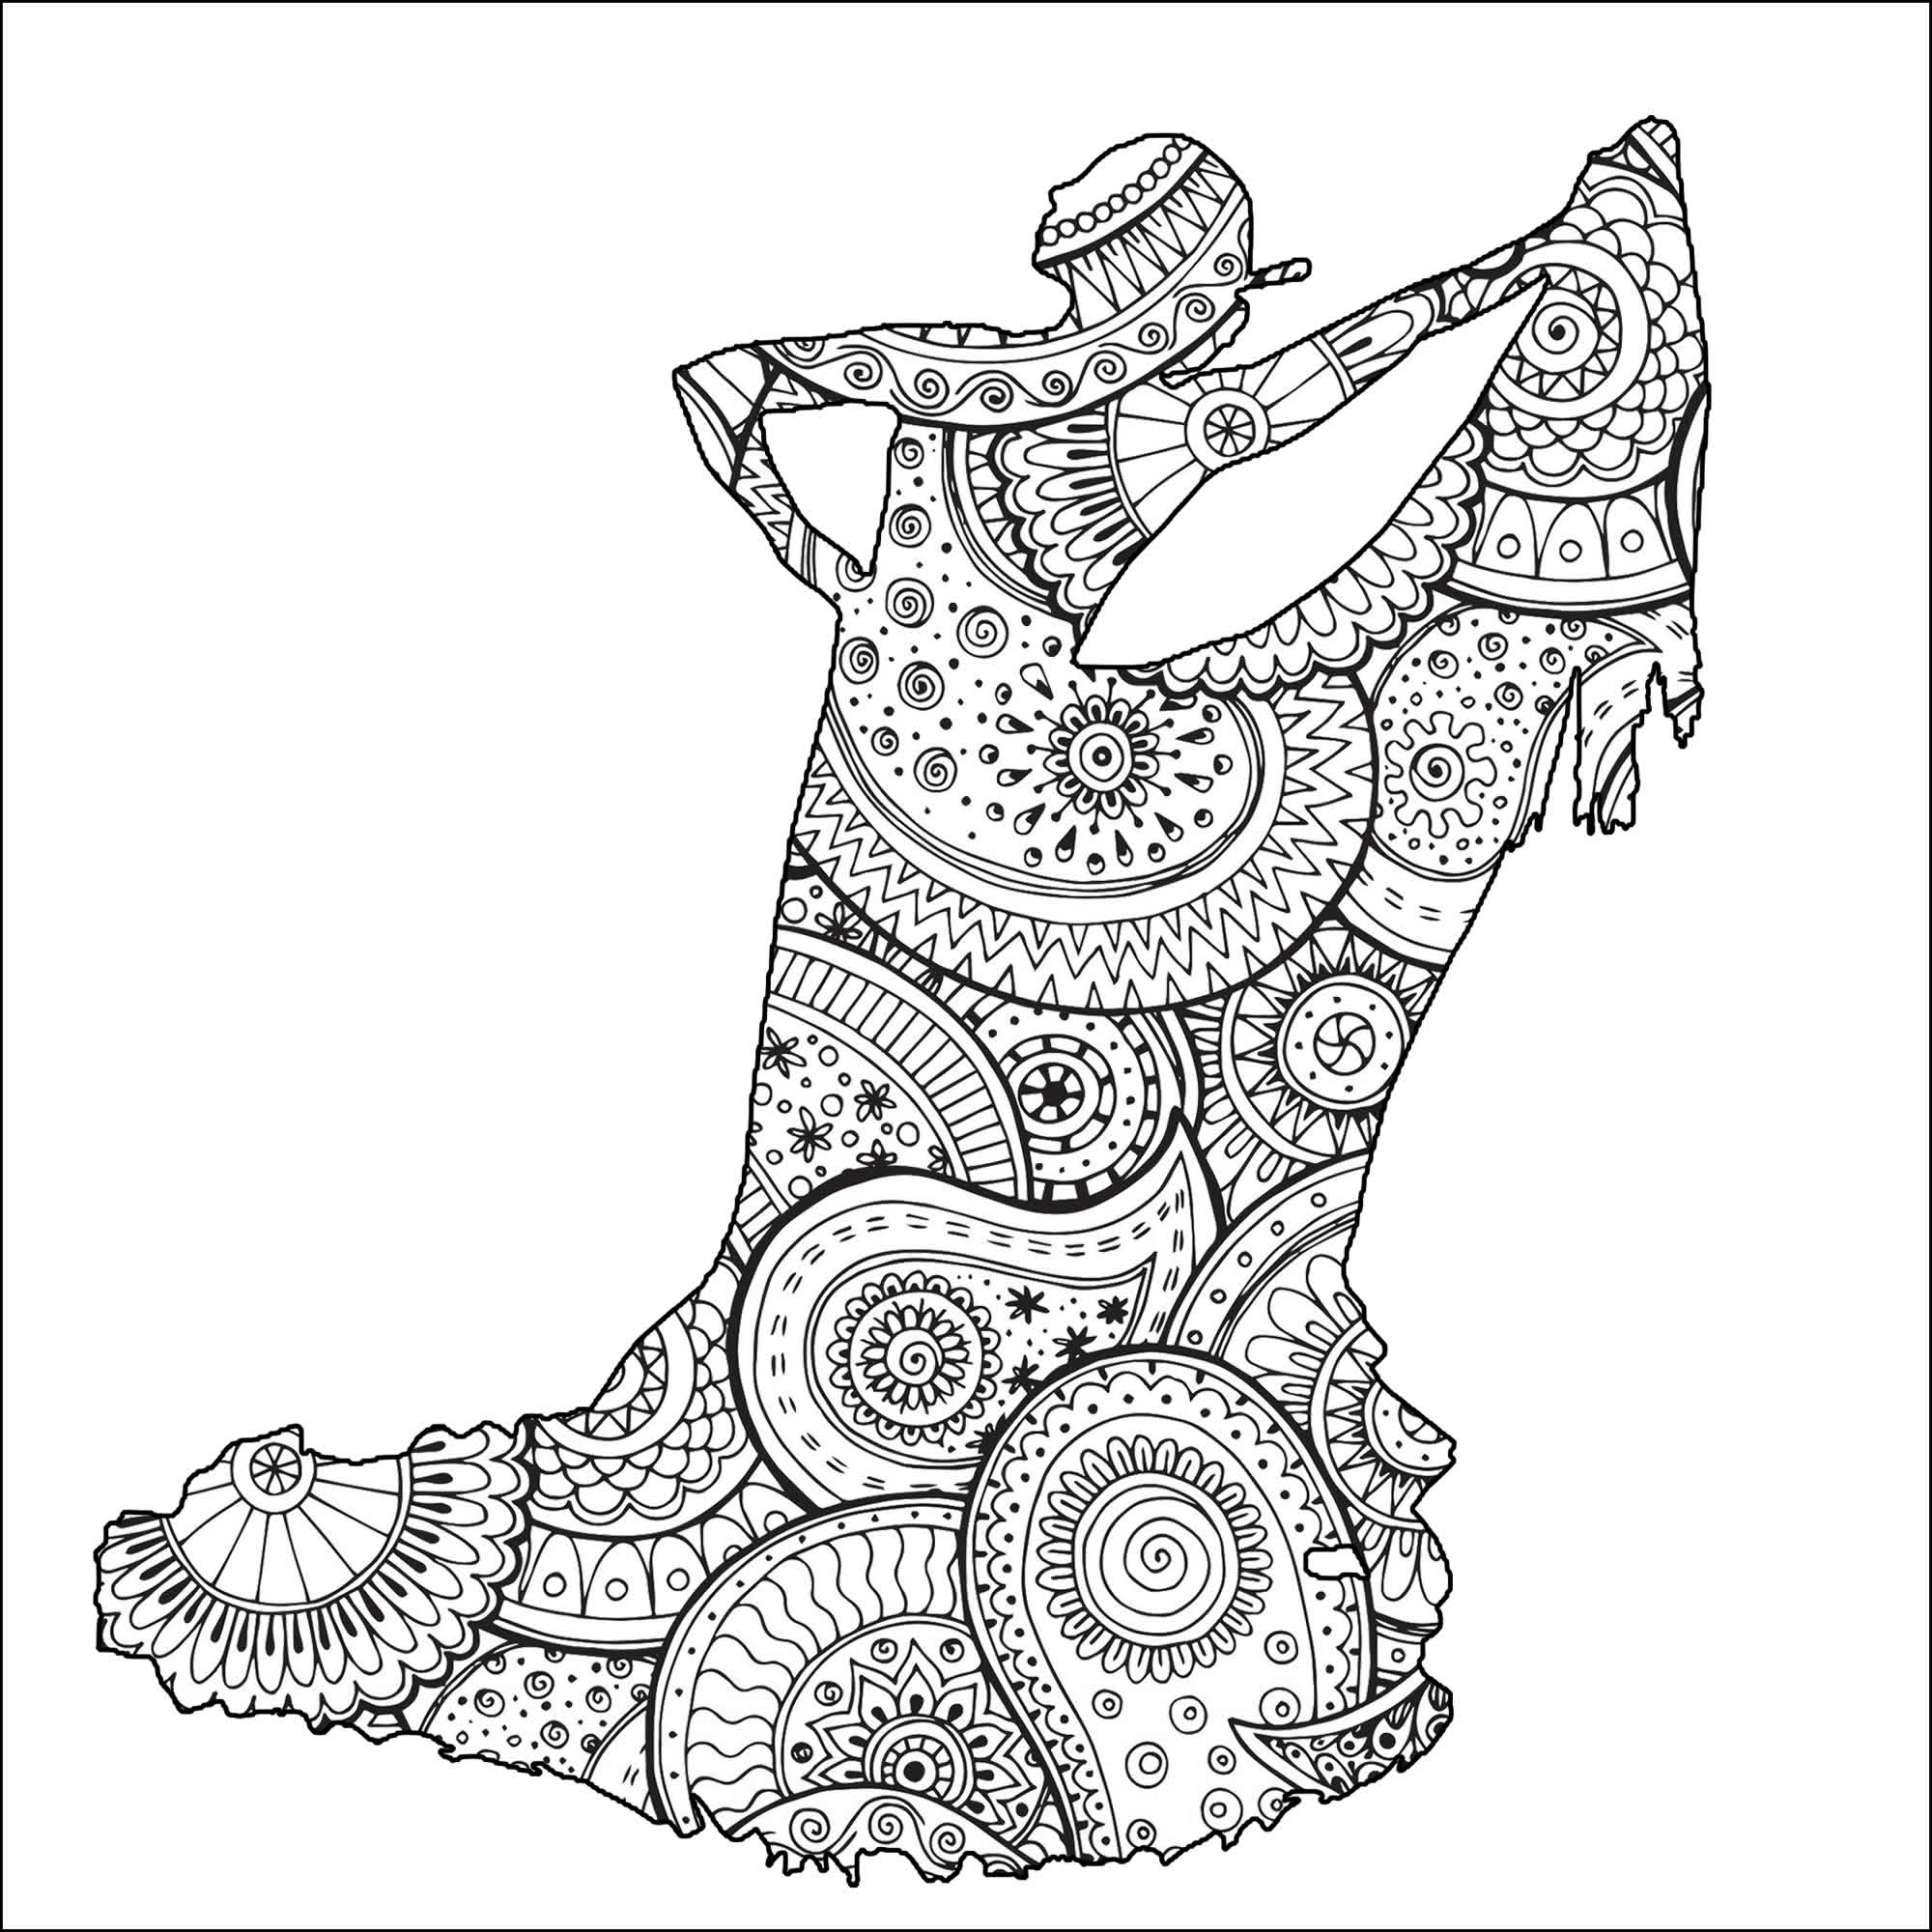 Bella forma di ballerina di flamenco femminile con motivi Zentangle e paisley